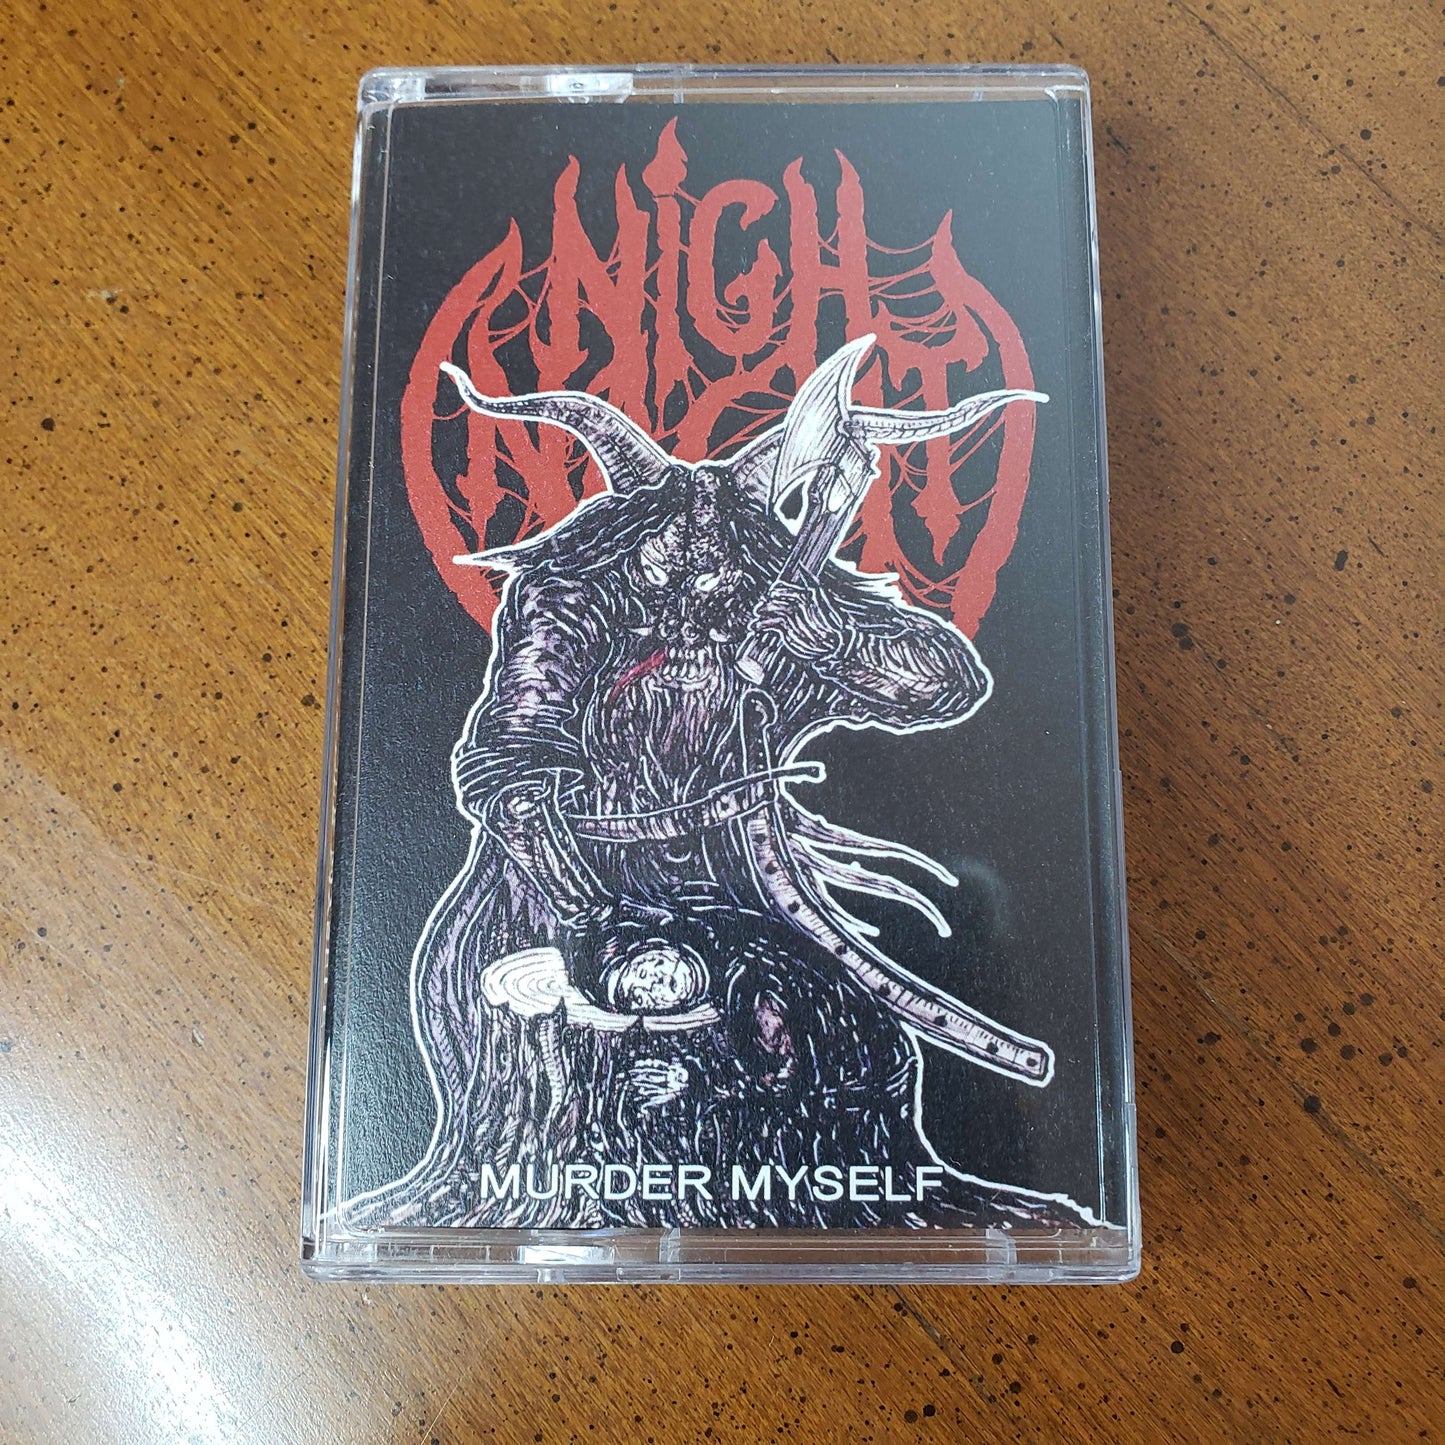 Nighnacht - Murder Myself cassette tape